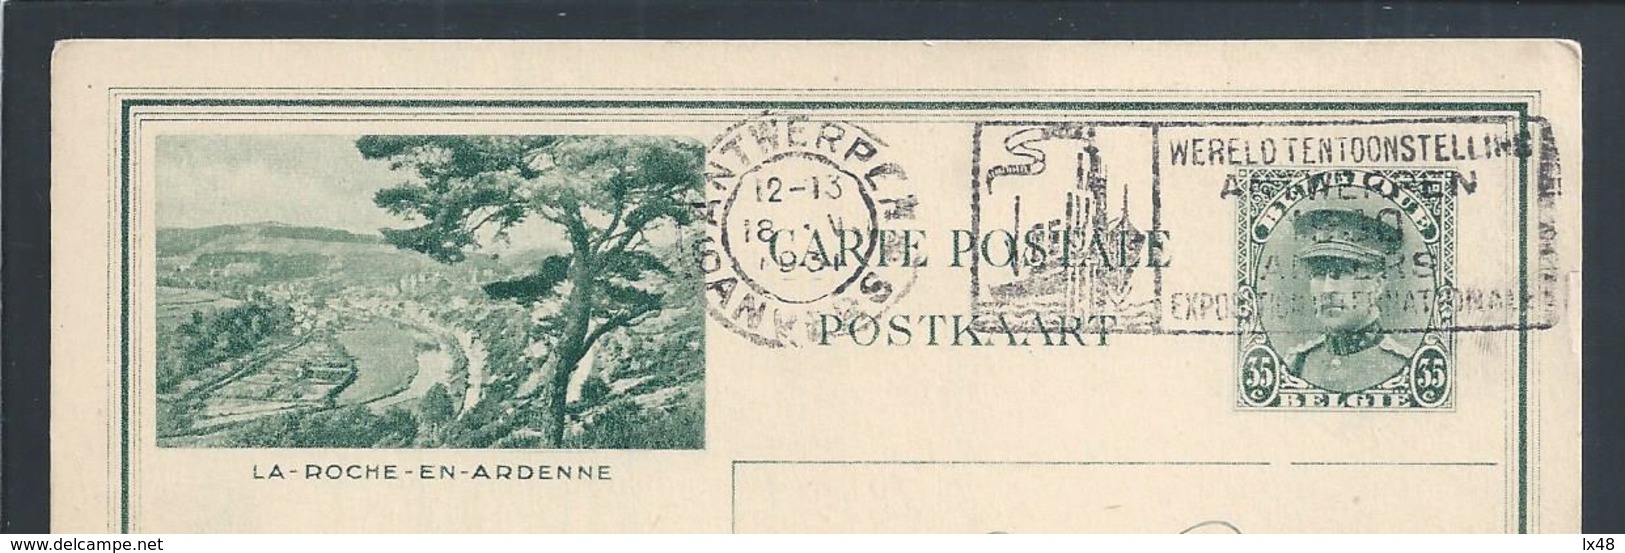 Pennant Of International Fair Liege And Antwerp 1930. Postcard Stationery Of La Roche En Ardenne. King Albert I. - 1930 – Lüttich (Belgien)